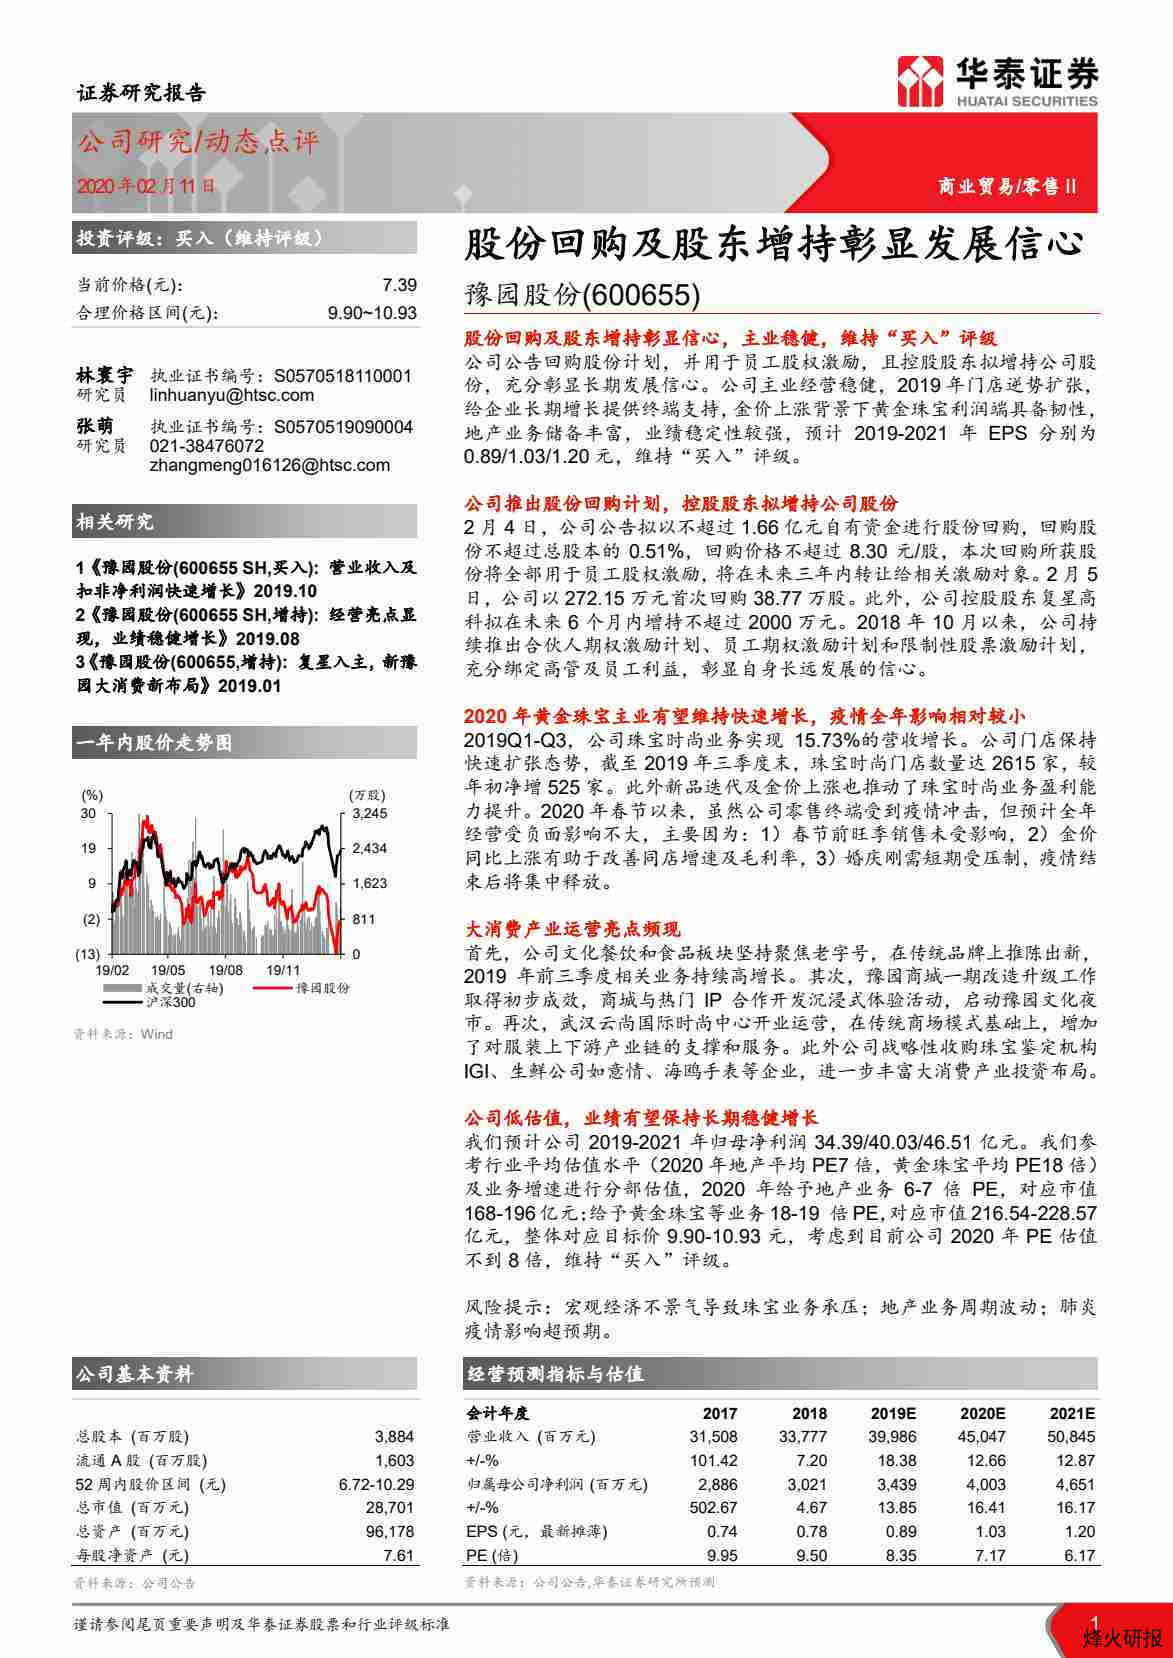 【华泰证券】股份回购及股东增持彰显发展信心.pdf-第一页